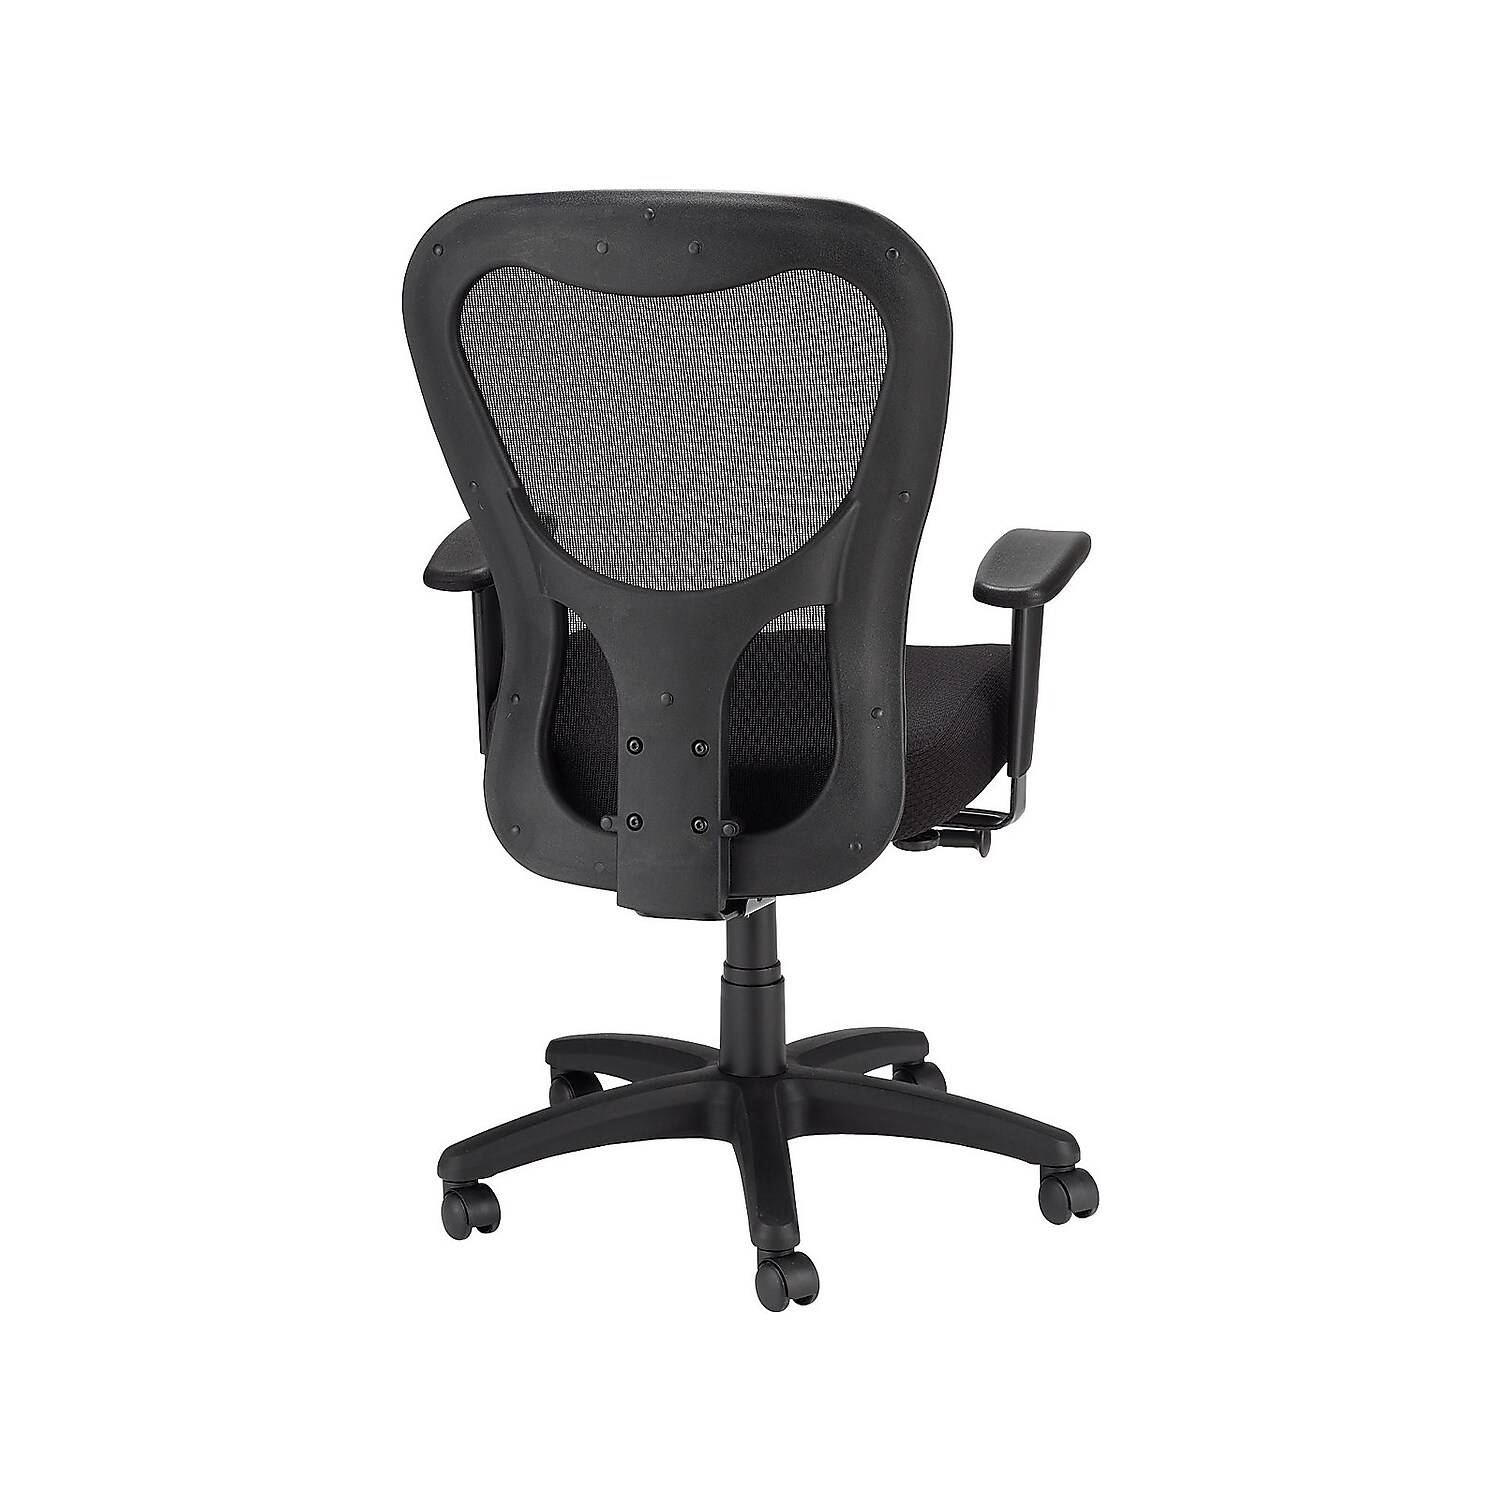 Tempur-Pedic TP9000 Mesh Task Chair Black (TP9000) 324021 - image 3 of 7